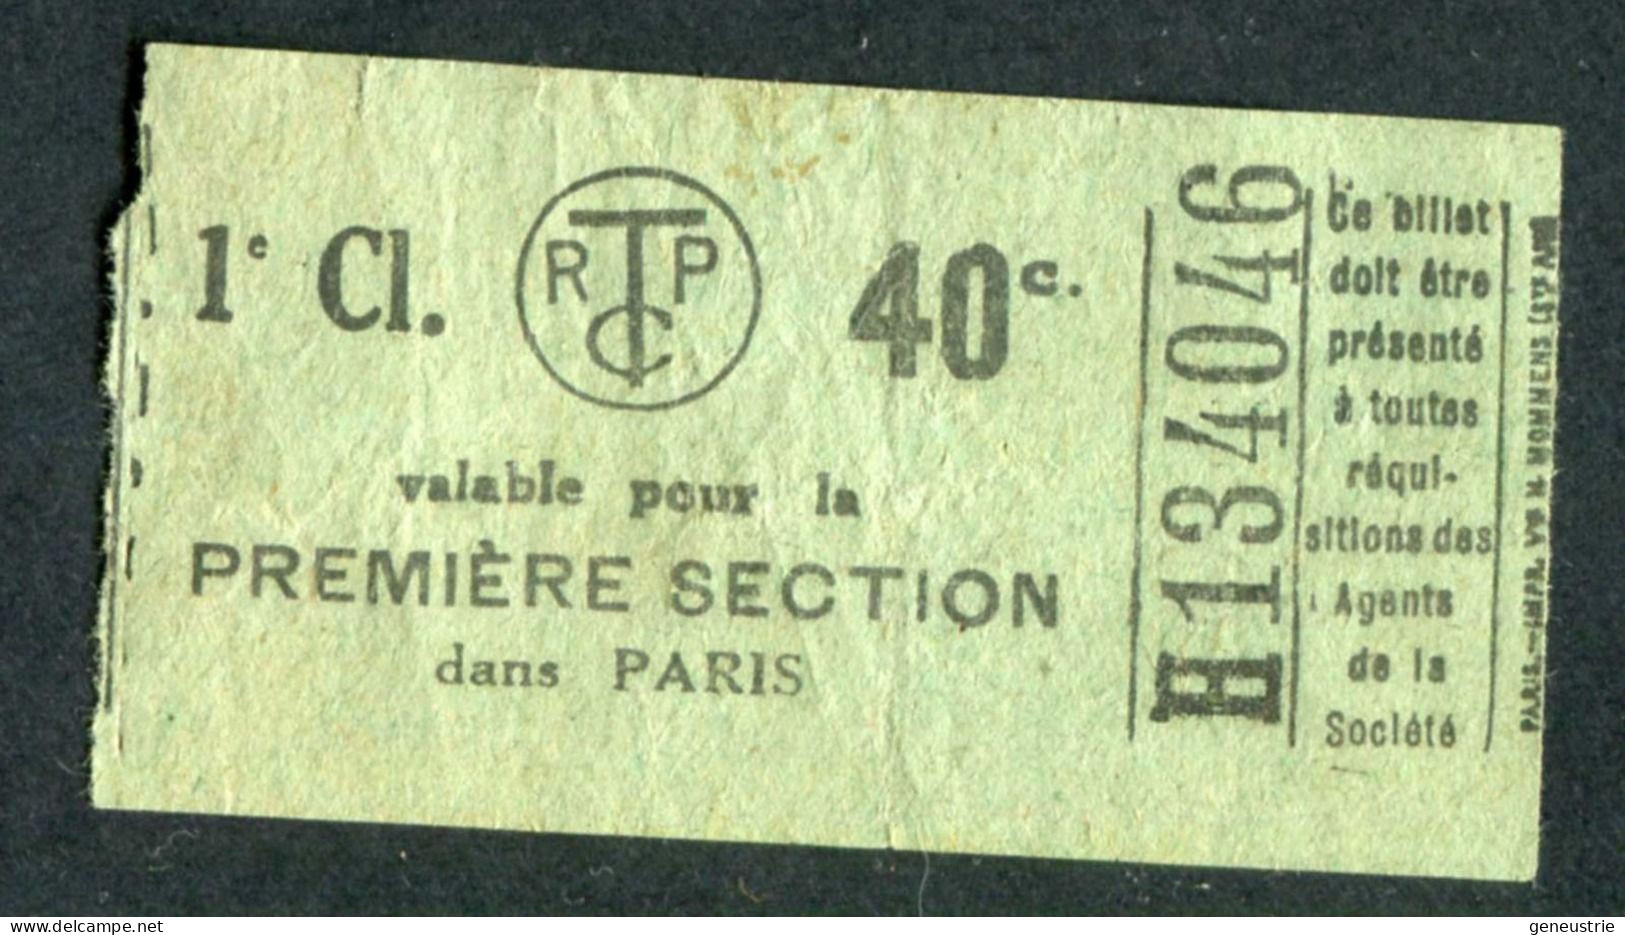 Ticket De Tramways Parisiens 1921 à 1938 (STCRP) 1e Classe 40c - Paris" Chemin De Fer - Tramway - Tram - Europe